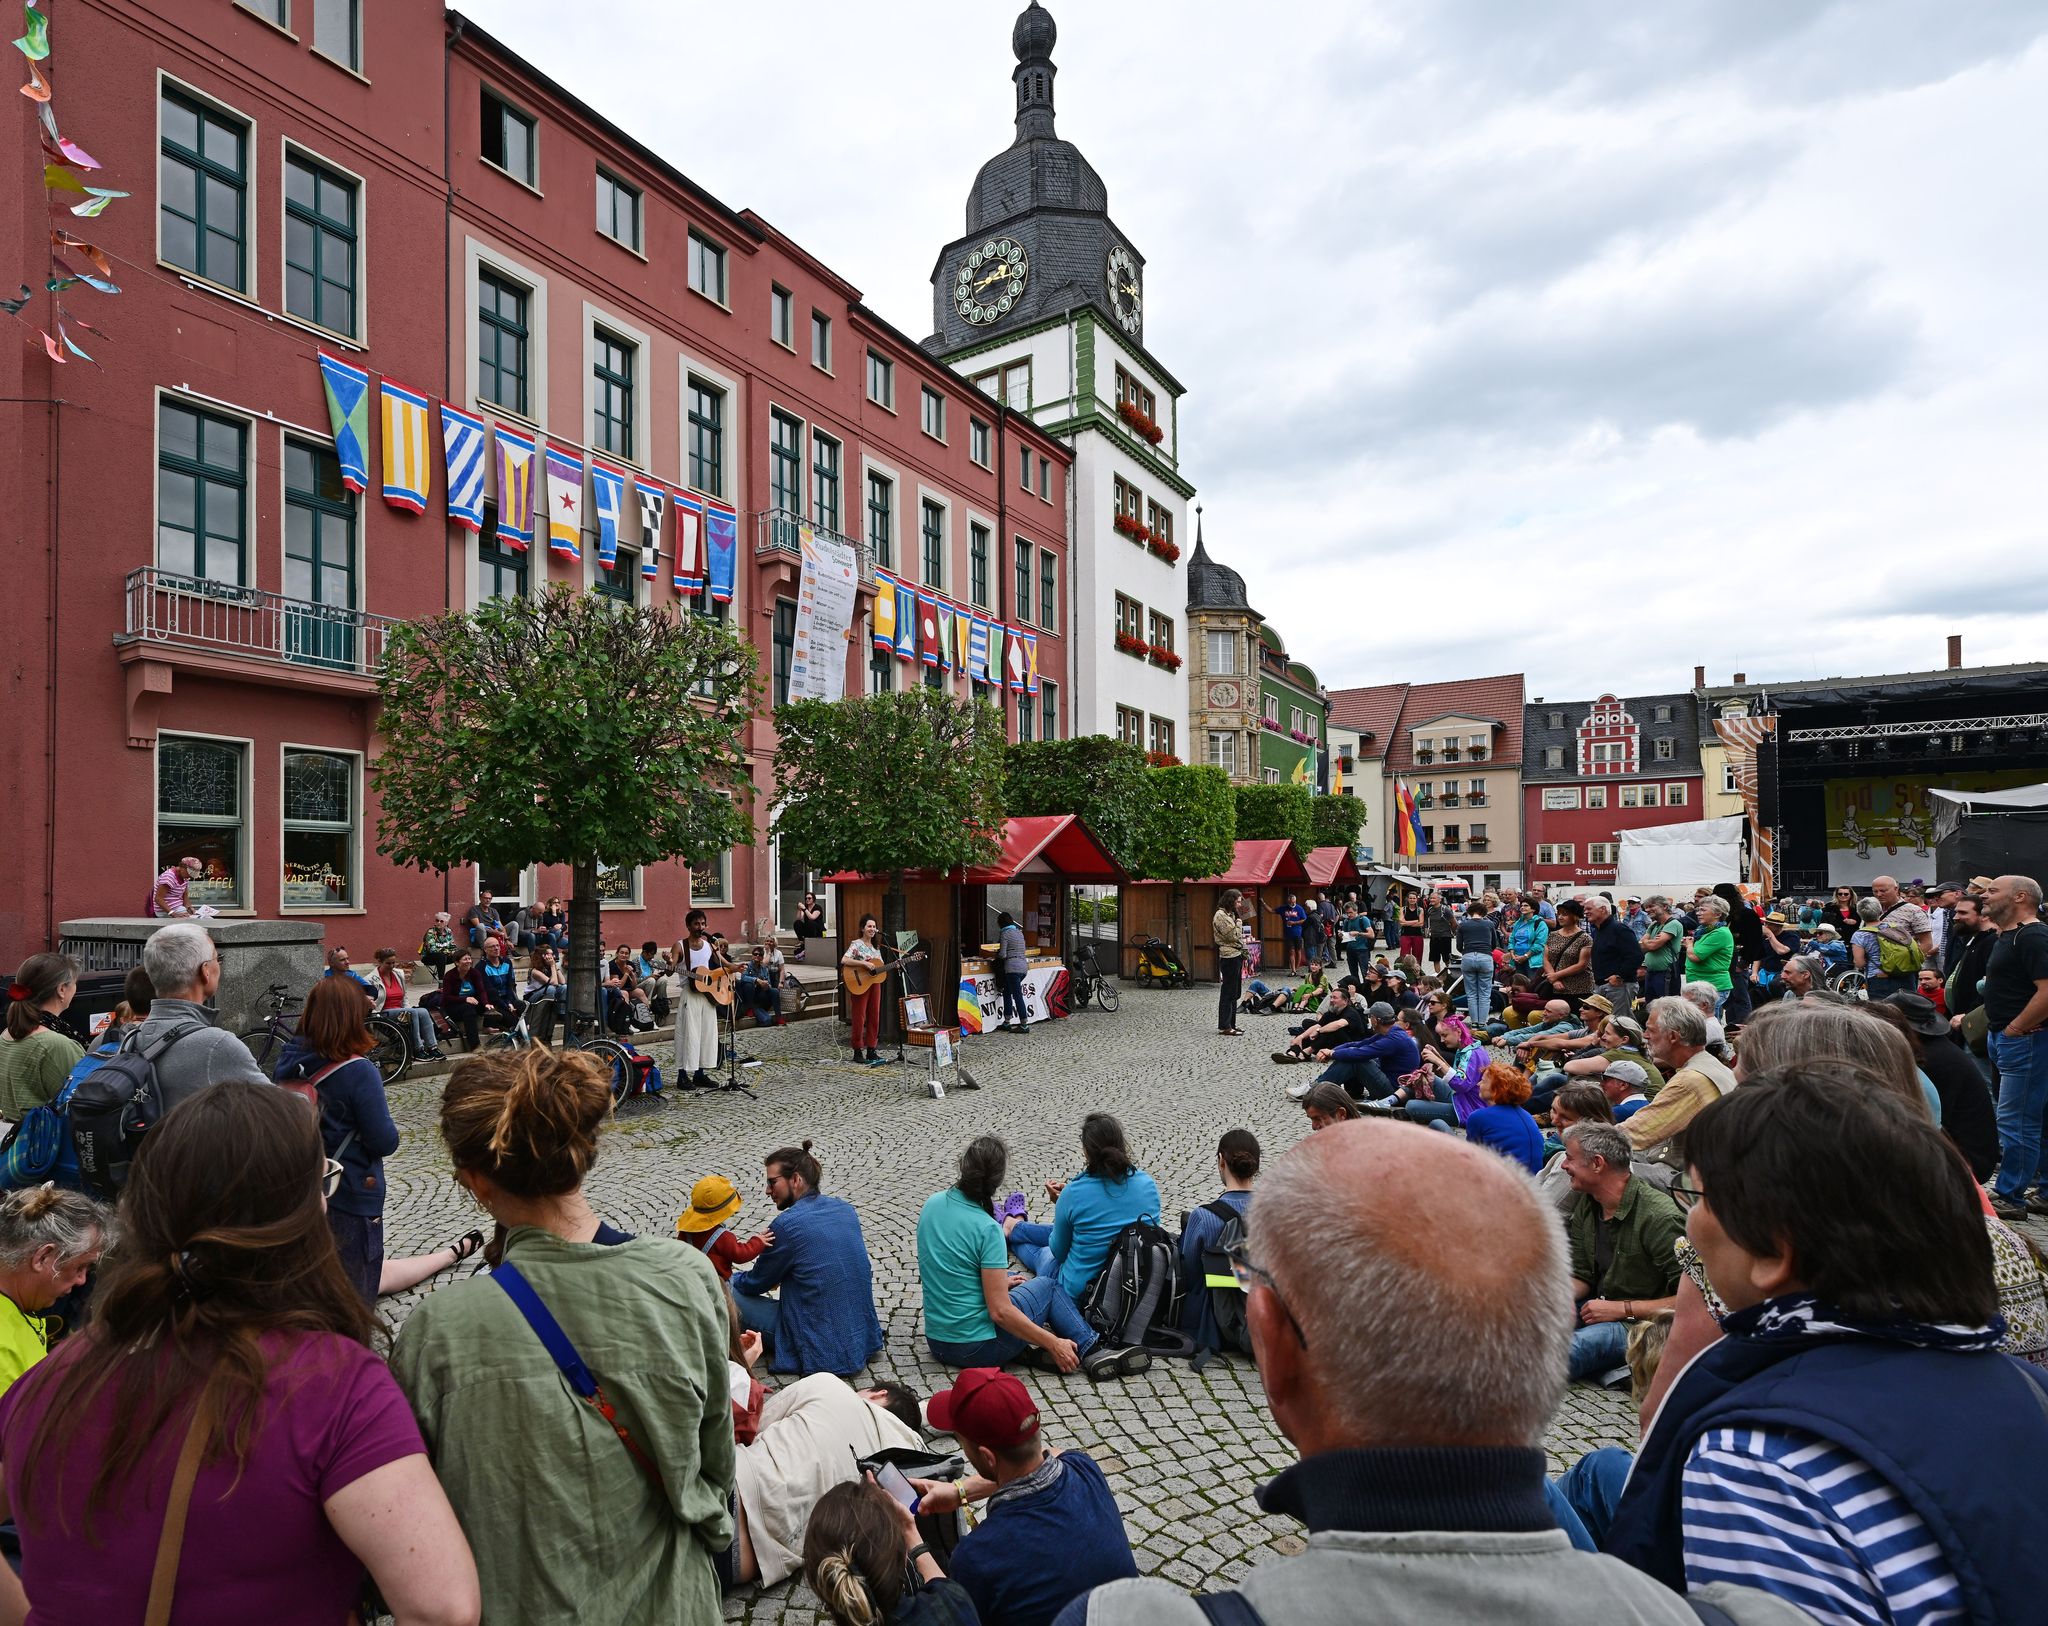 Rudolstadt-Festival 
Fester Bestandteil des Rudolstadt-Festivals sidn die vielen Straenmusiker in der Innenstadt. Martin Schutt/dpa